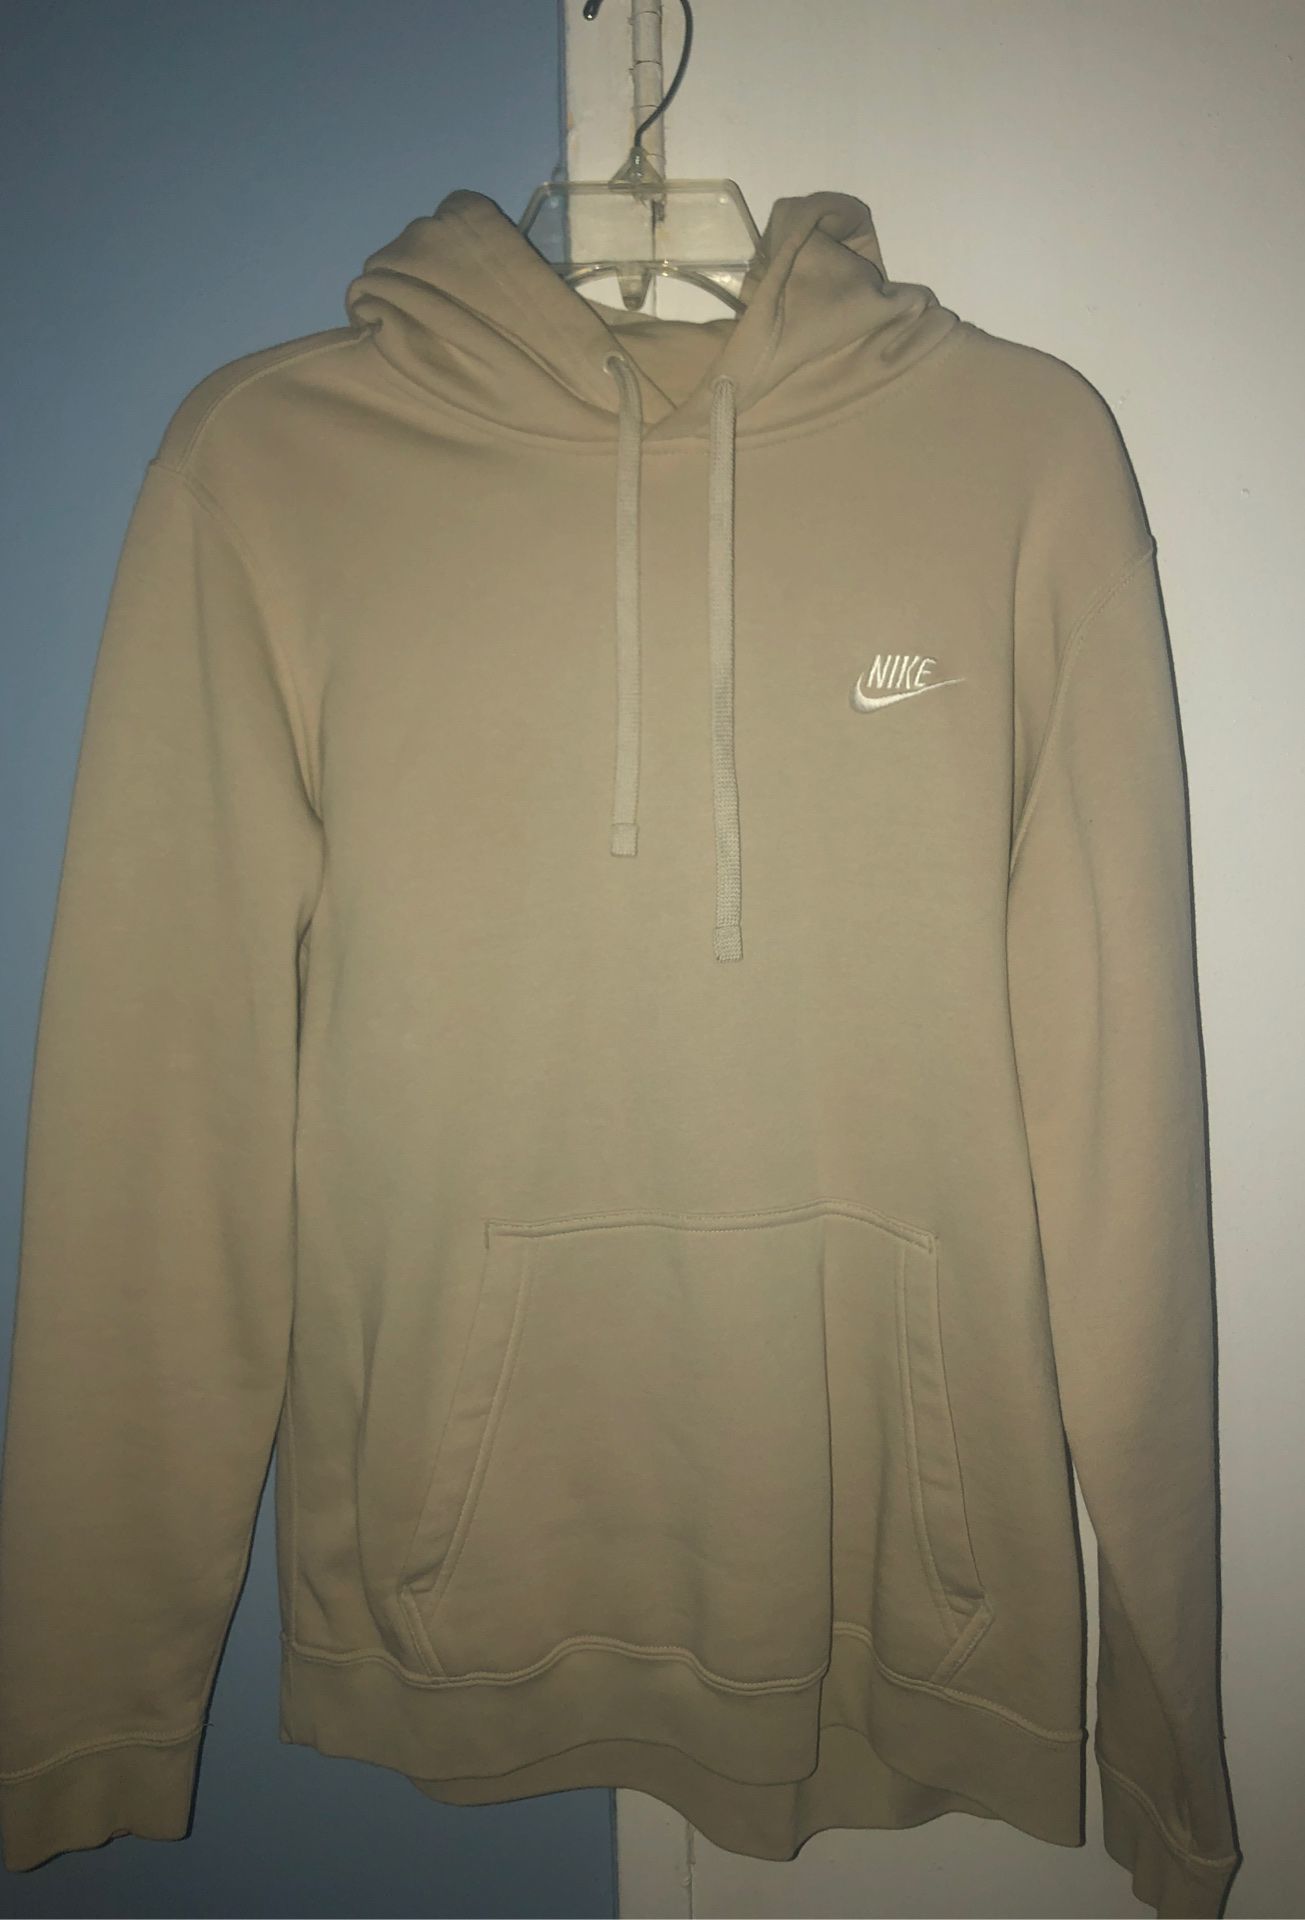 Nike Medium hoodie worn once